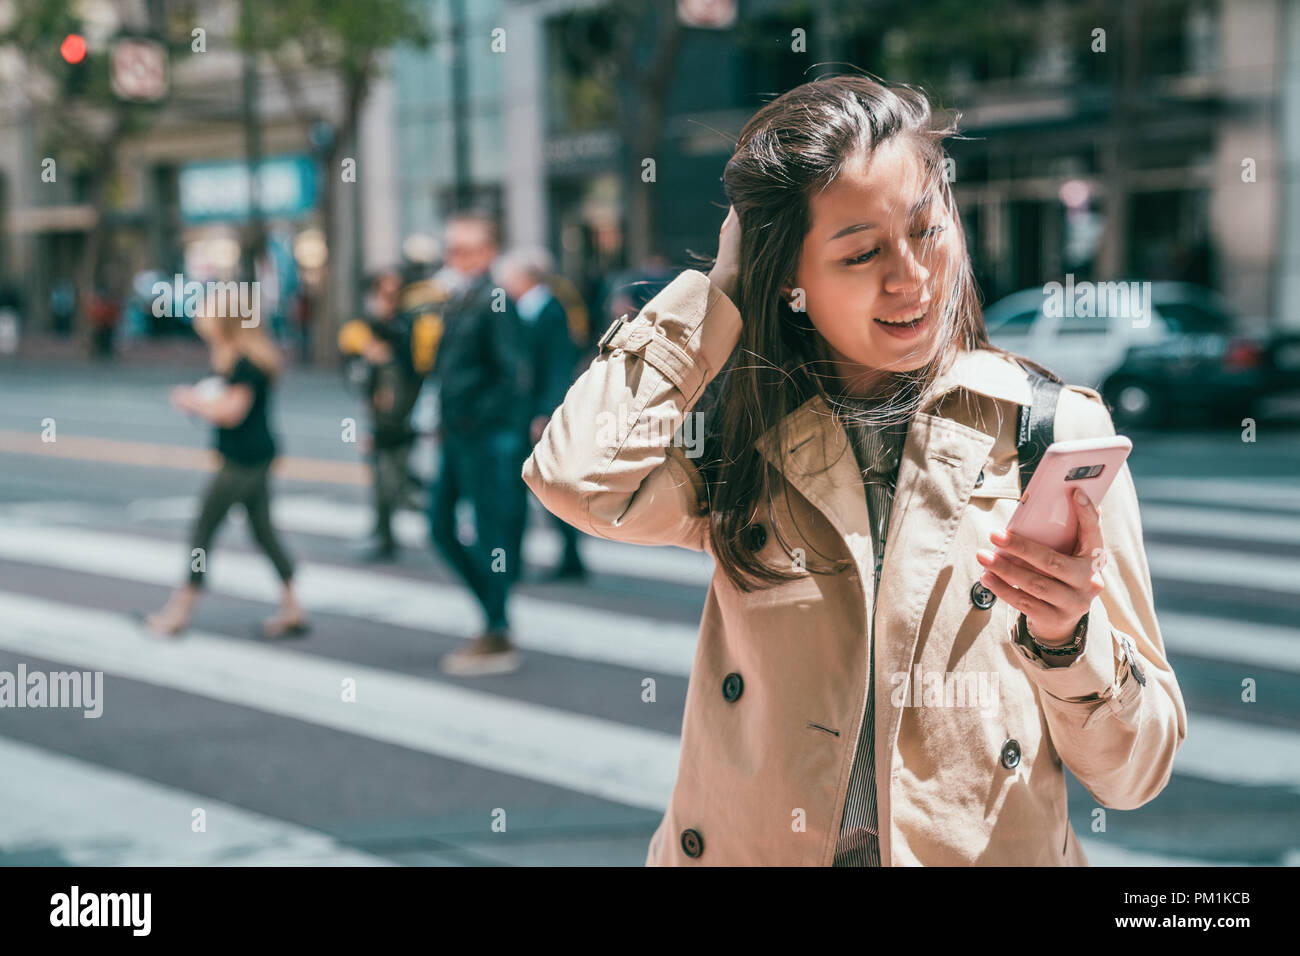 Schönen asiatischen Frau ihrem Freund finden Sms auf Telefon und freudig auf der Suche nach Beantwortung der Nachricht. Stockfoto